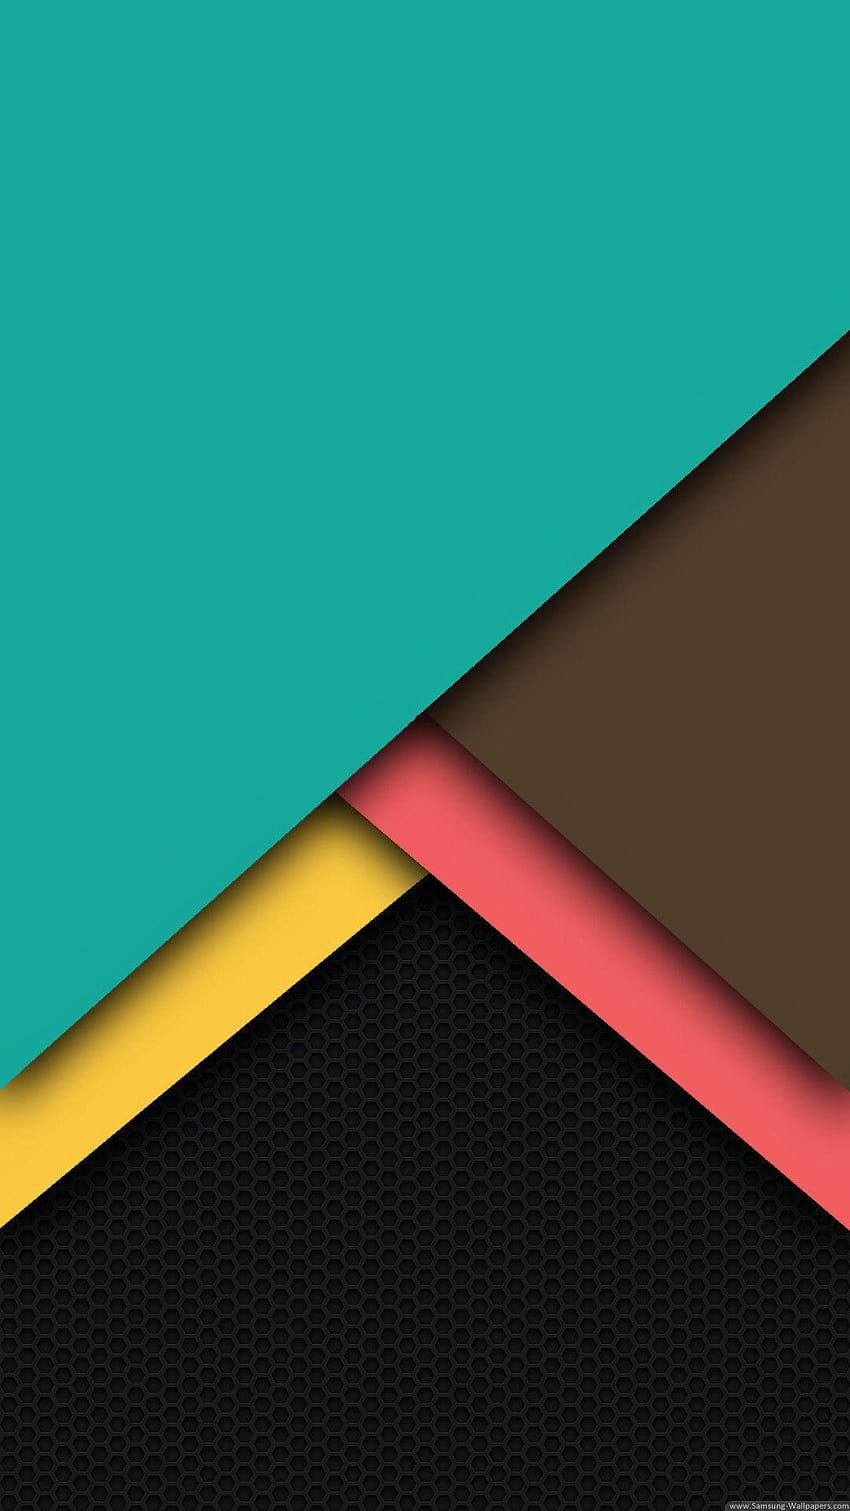 Download Nexus 5 Android 4.4 KitKat Wallpaper Pack - NaldoTech